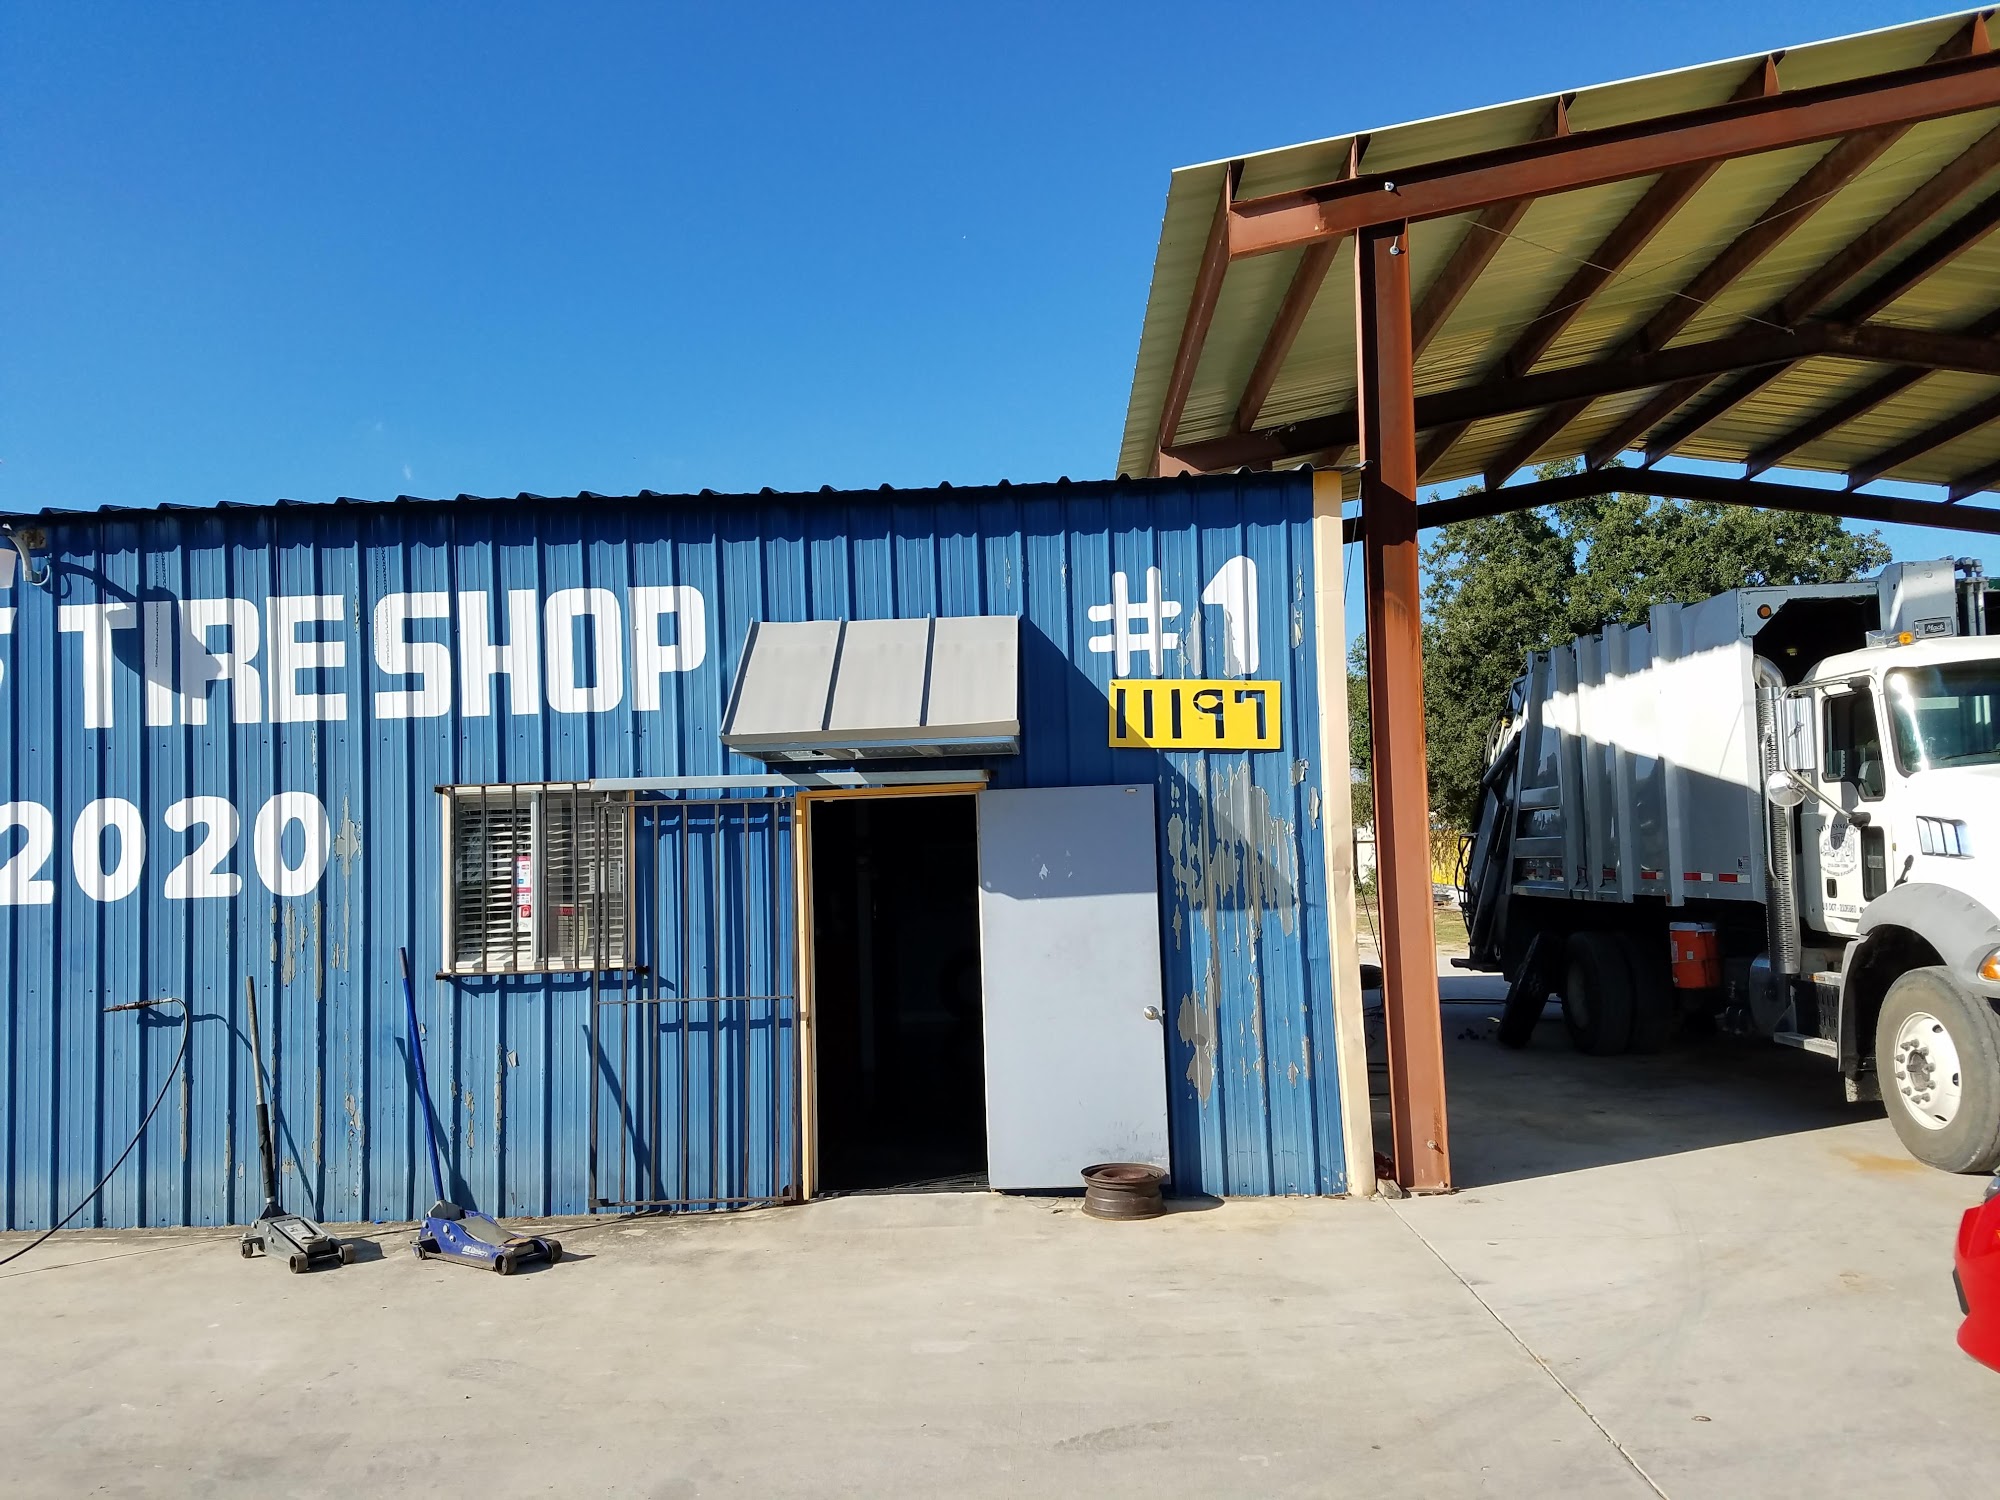 Cesar's Tire Shop #1